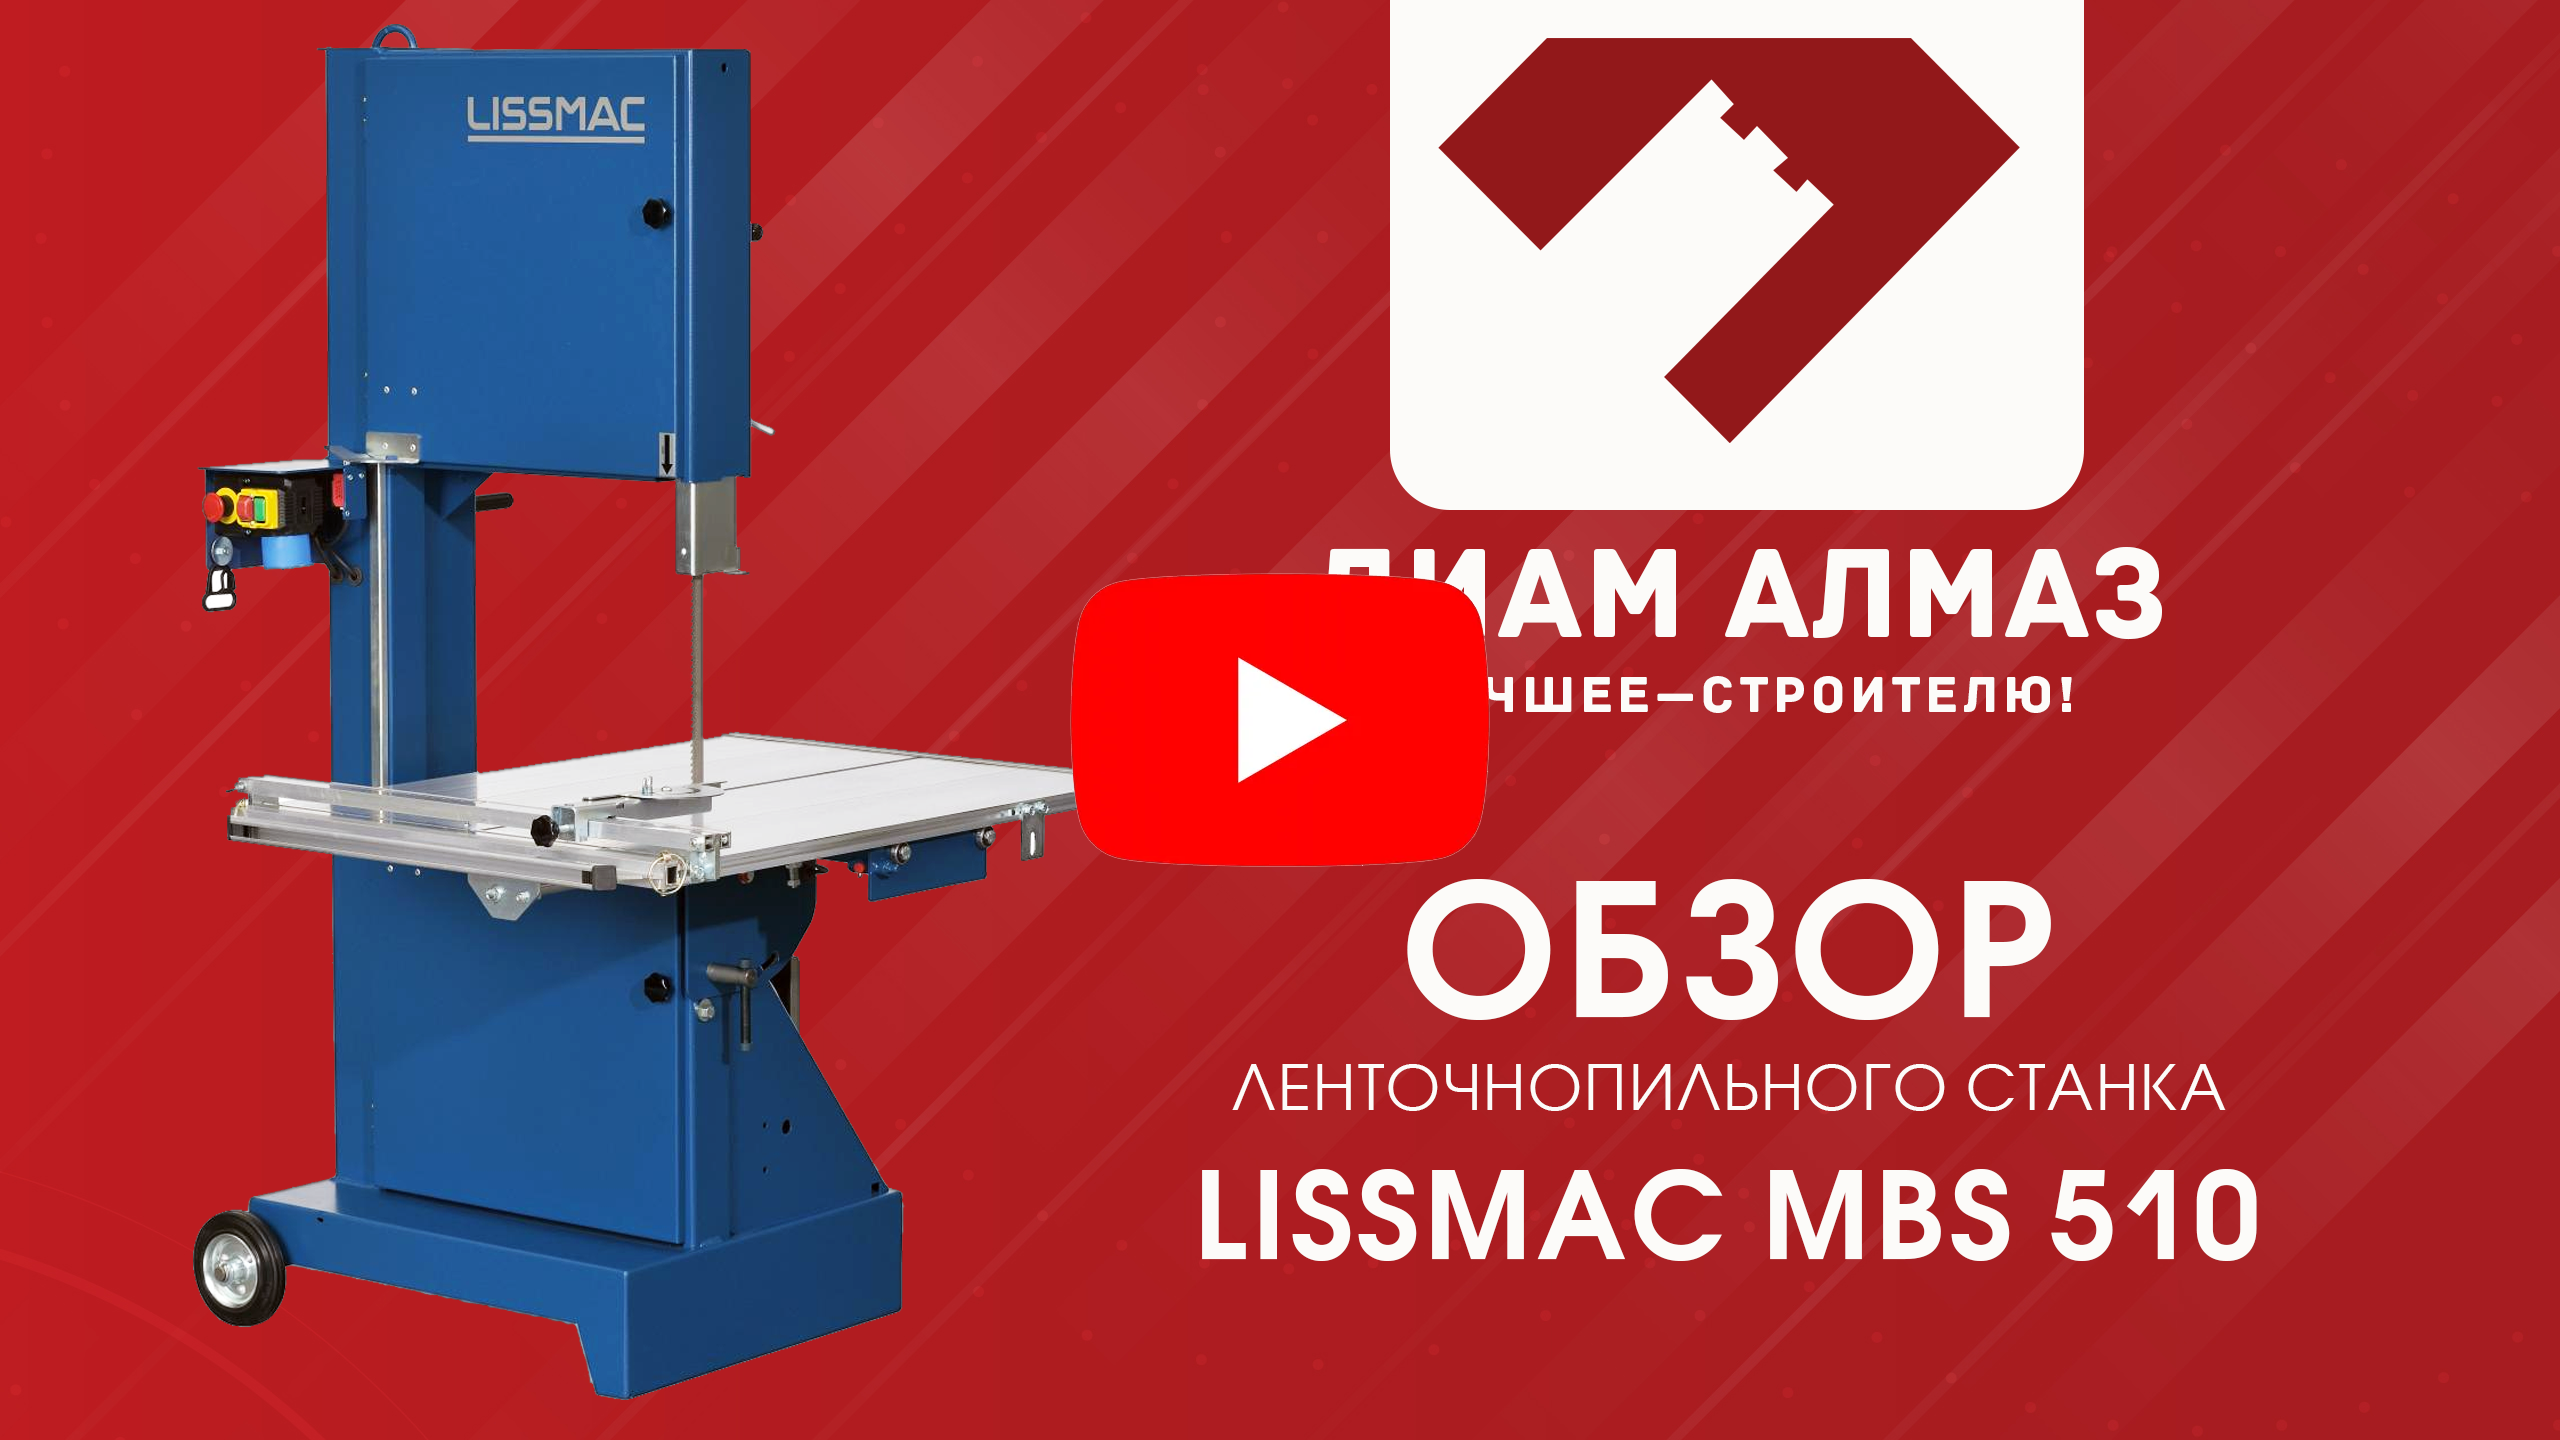 Обзор ленточнопильного станка Лиссмак MBS 510 на канале Диам Алмаз